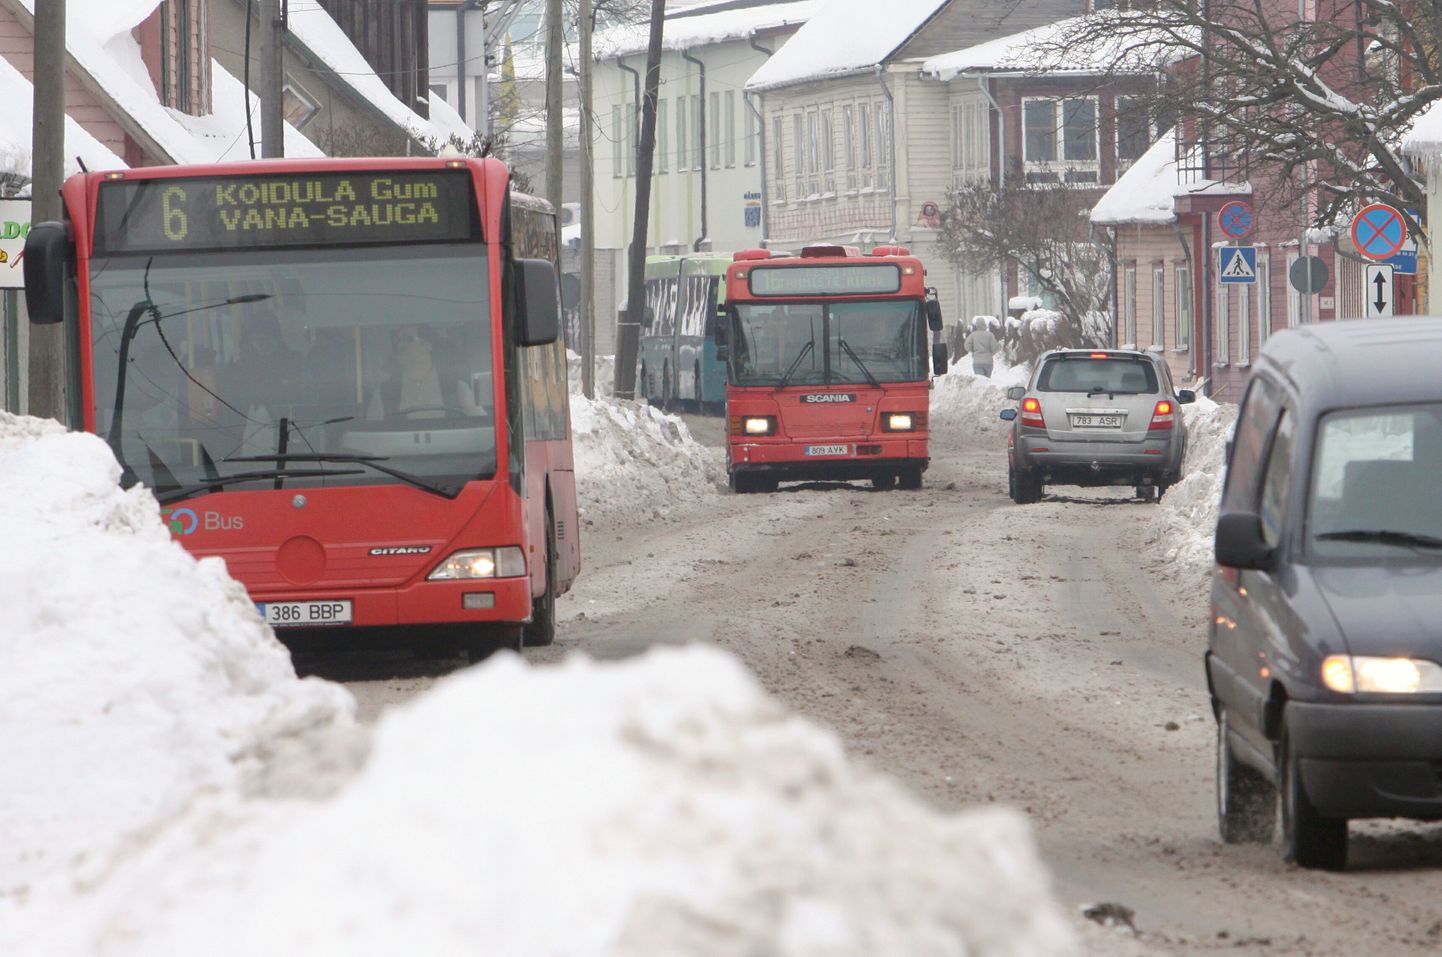 Aina kuhjuvad lumevallid sunnivad mitmel pool Pärnus liikluskorraldust muutma.